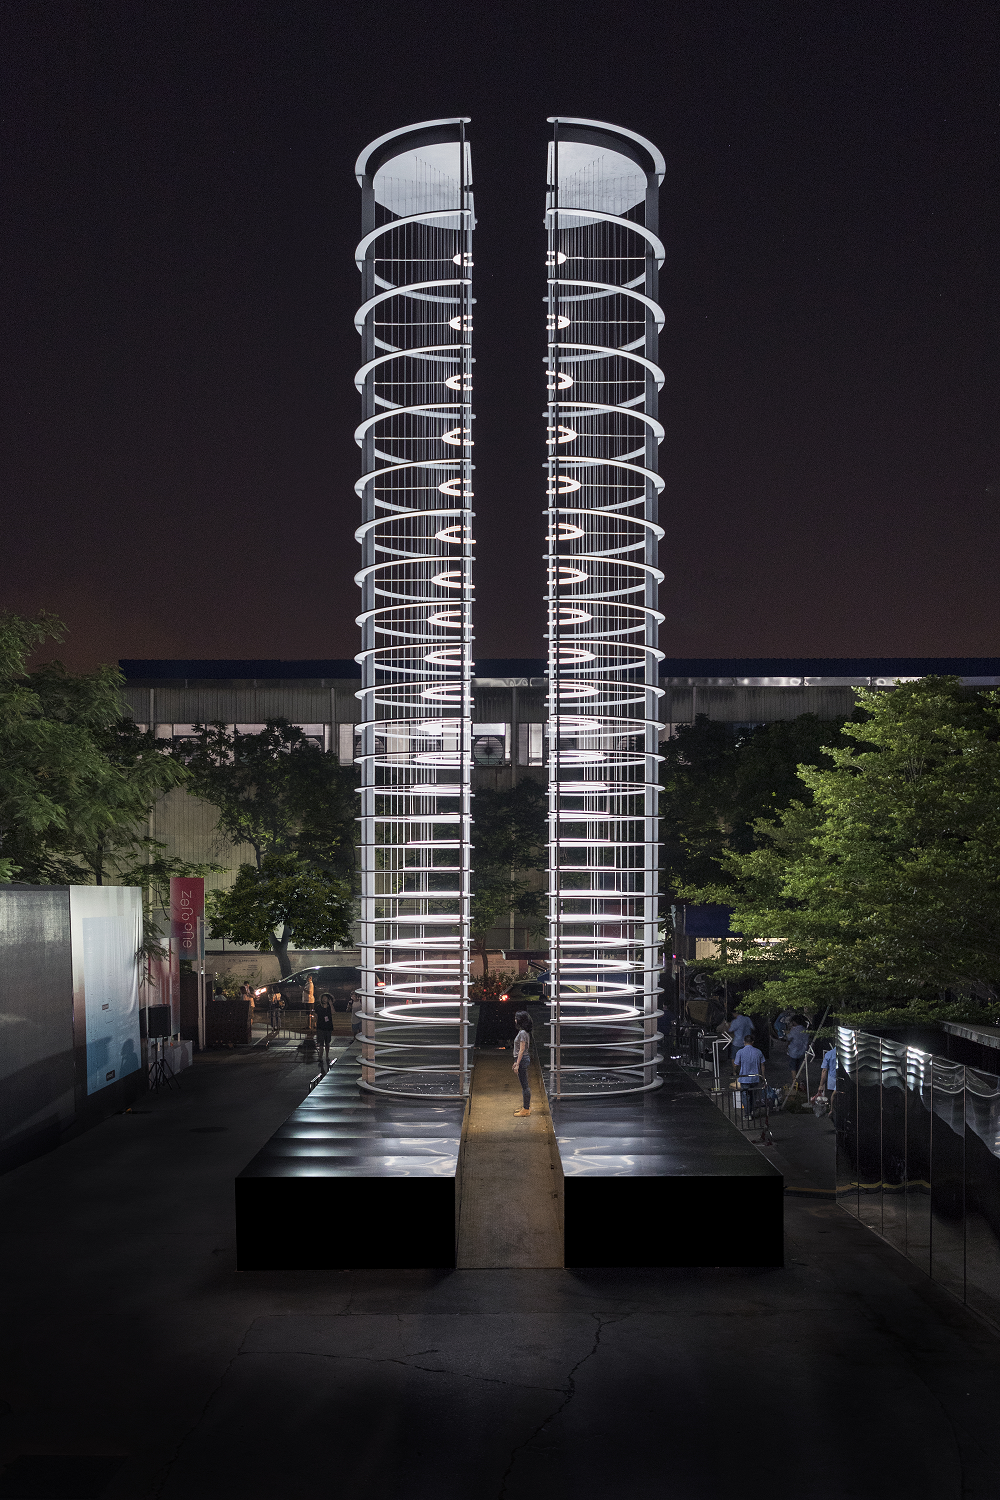 A tall column light installation